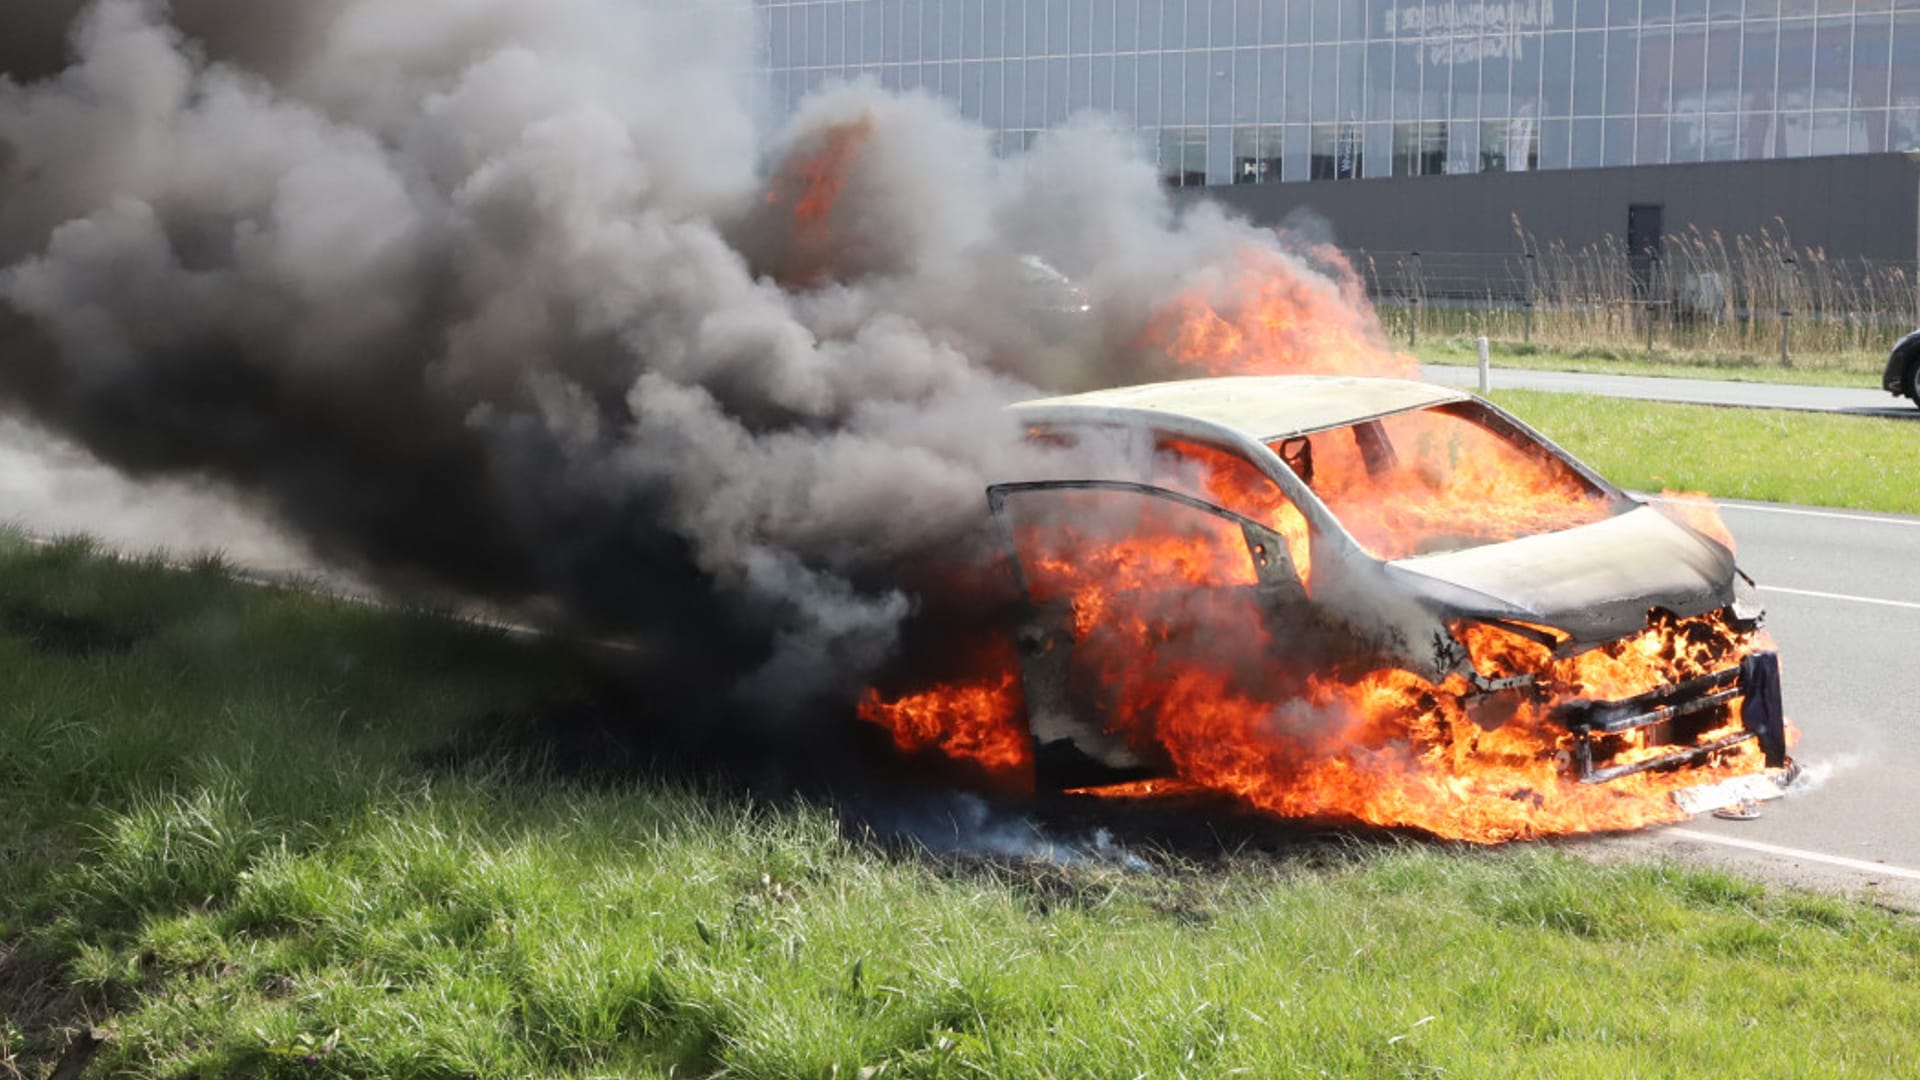 Rijdende auto vliegt in brand in Wateringen, bestuurder komt met de schrik vrij